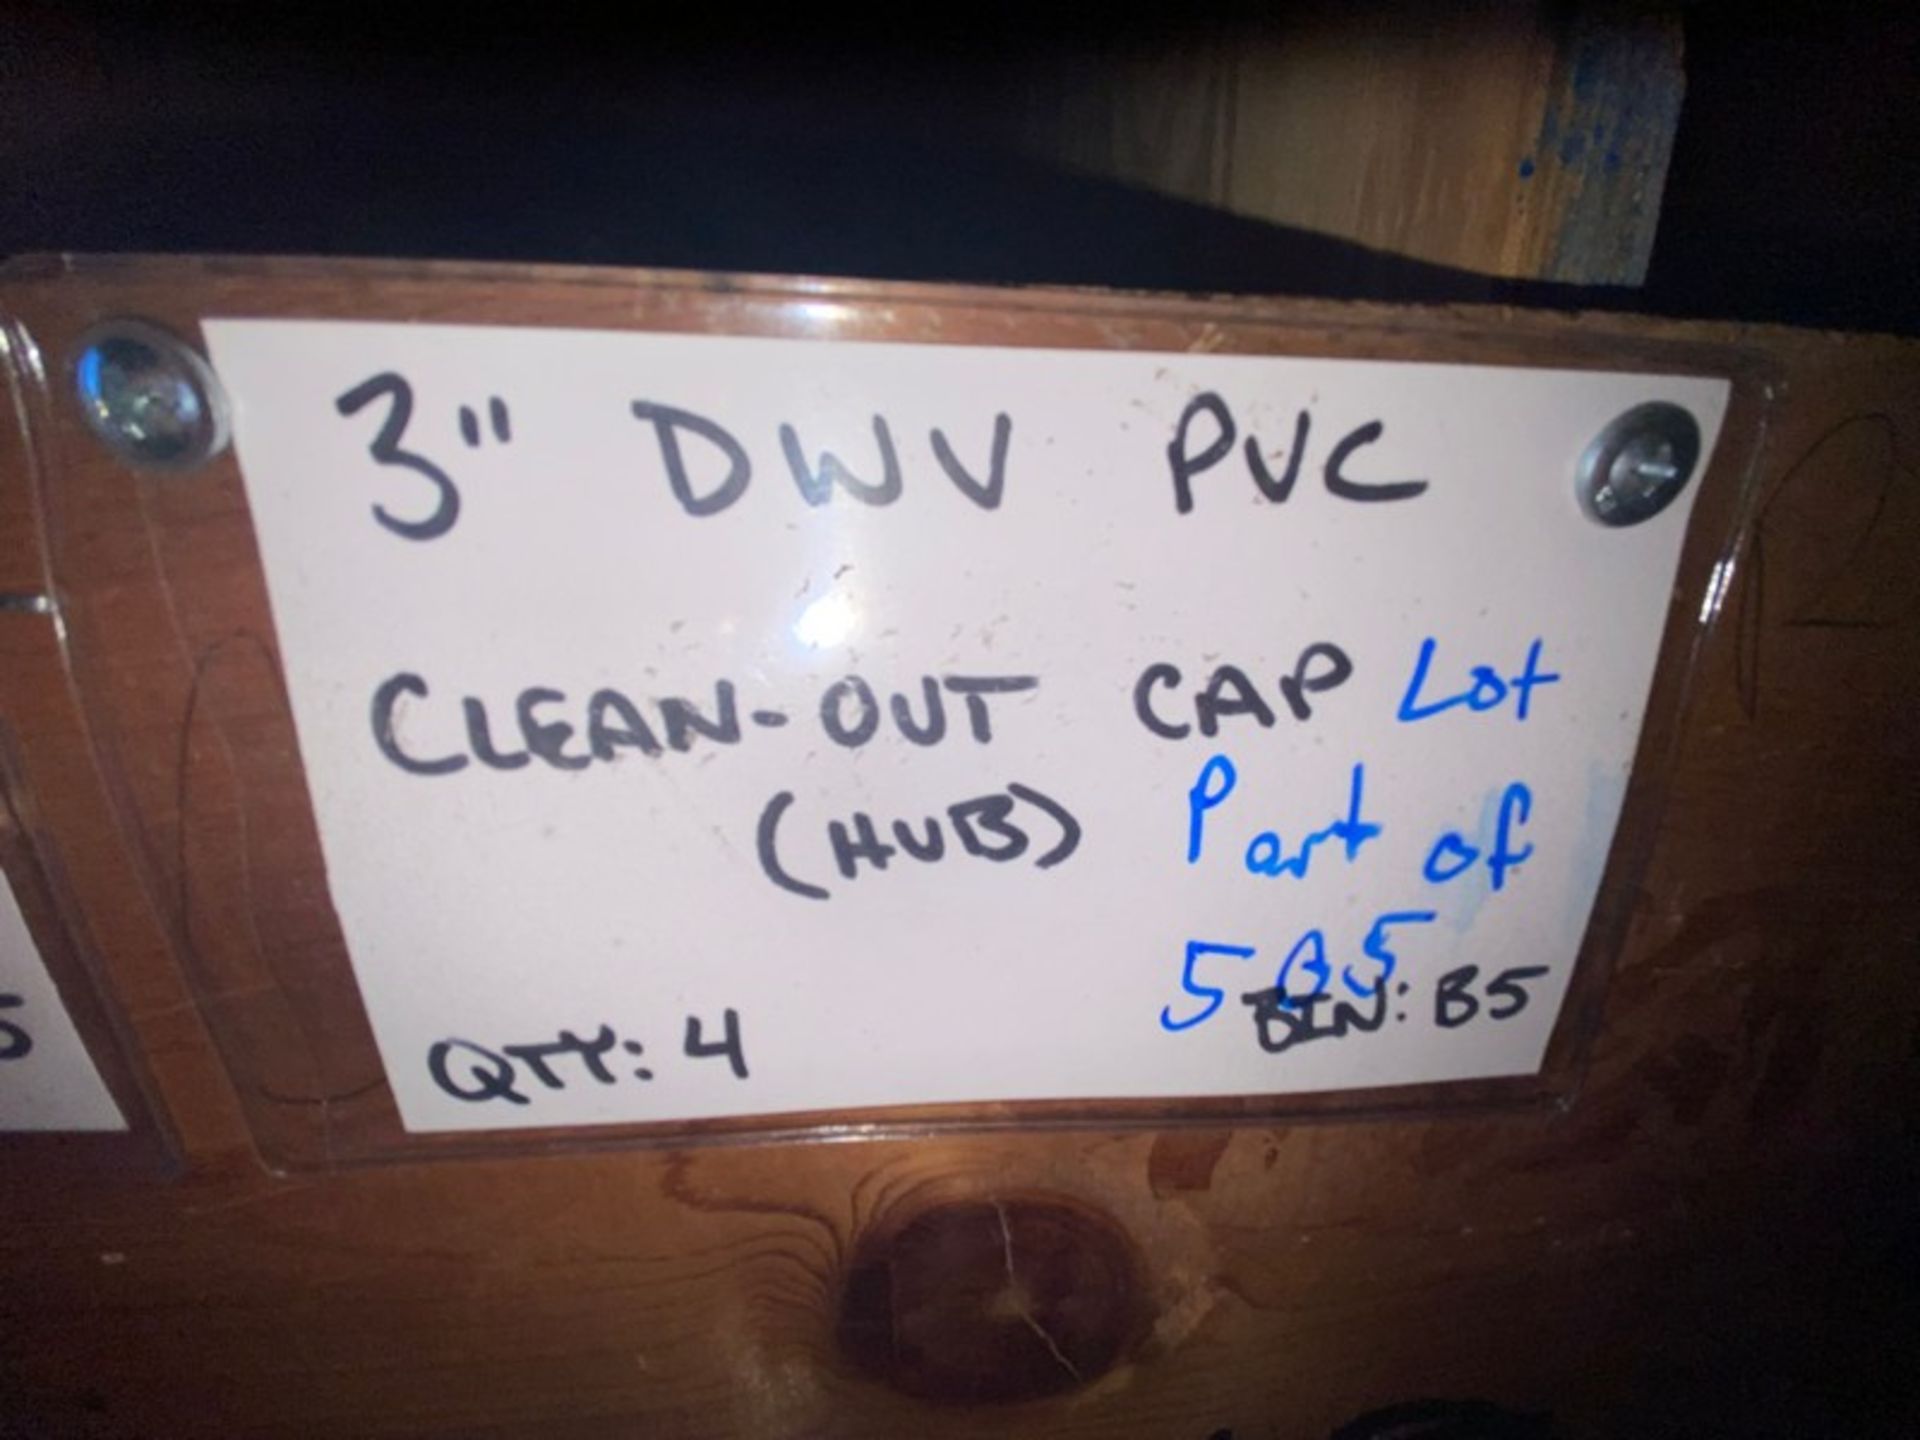 (12) 3” DWV PVC Clean-out cap (STREET) (Bin: B5), Includes (4) 3” DWV PVC Clean-Out Cap (HUB) (BIN: - Bild 7 aus 8